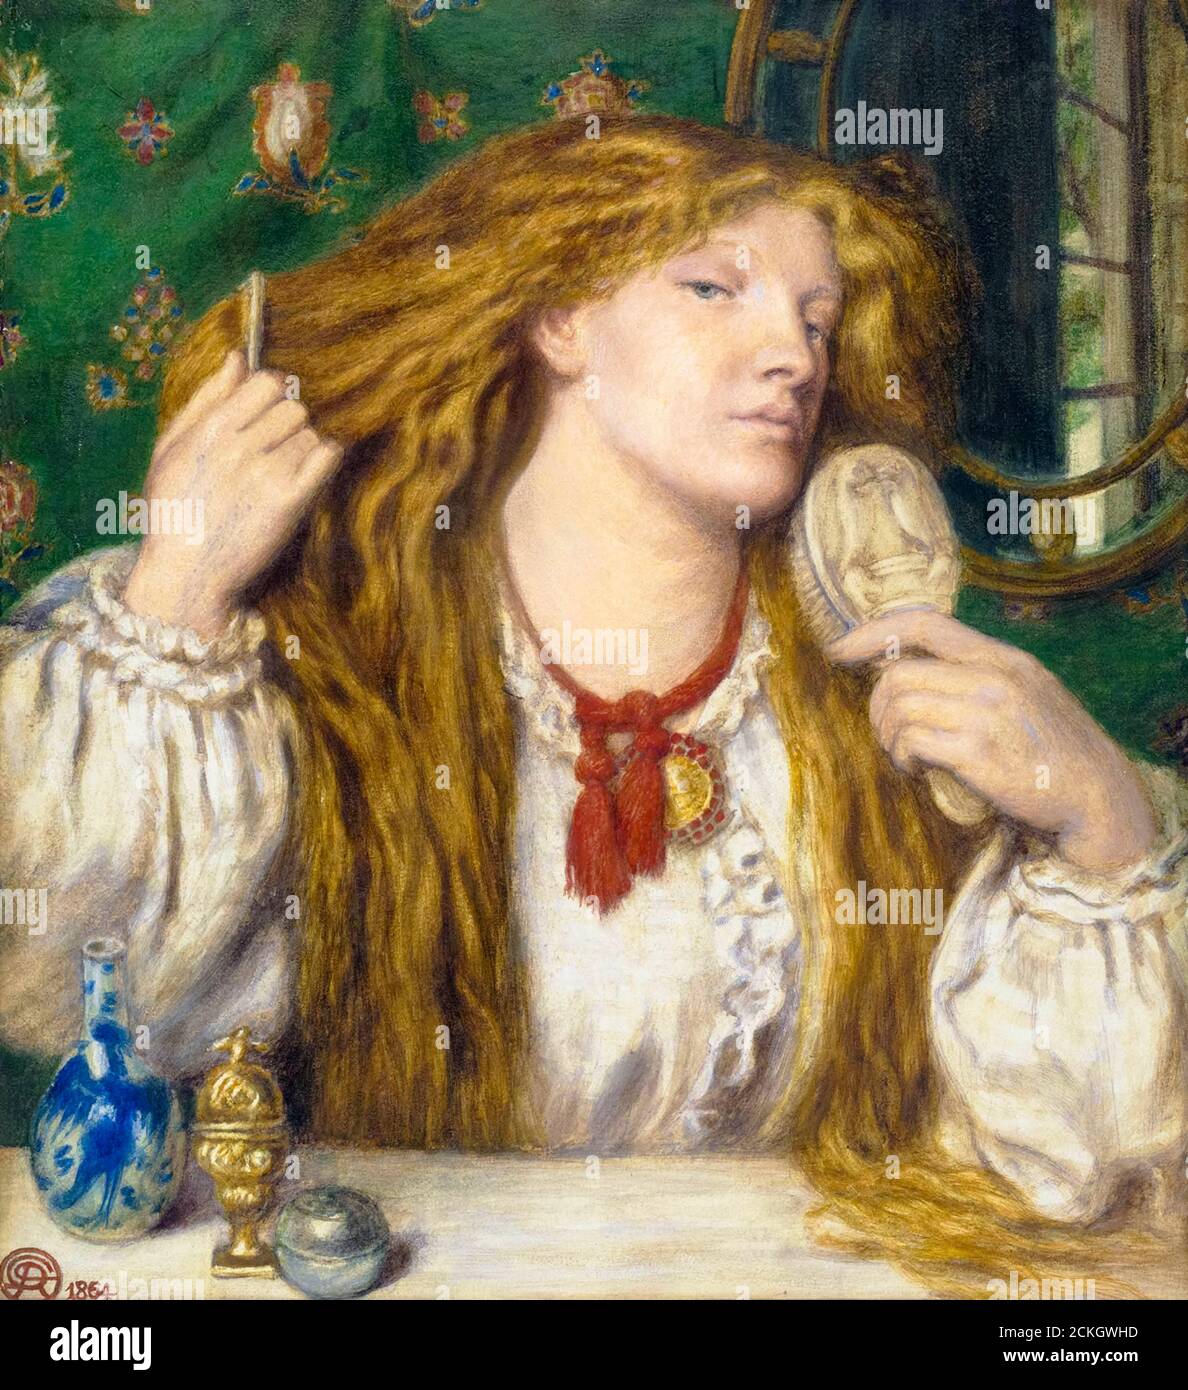 Femme peignant ses cheveux (Fanny Cornforth), portrait peint par Dante Gabriel Rossetti, 1864 Banque D'Images